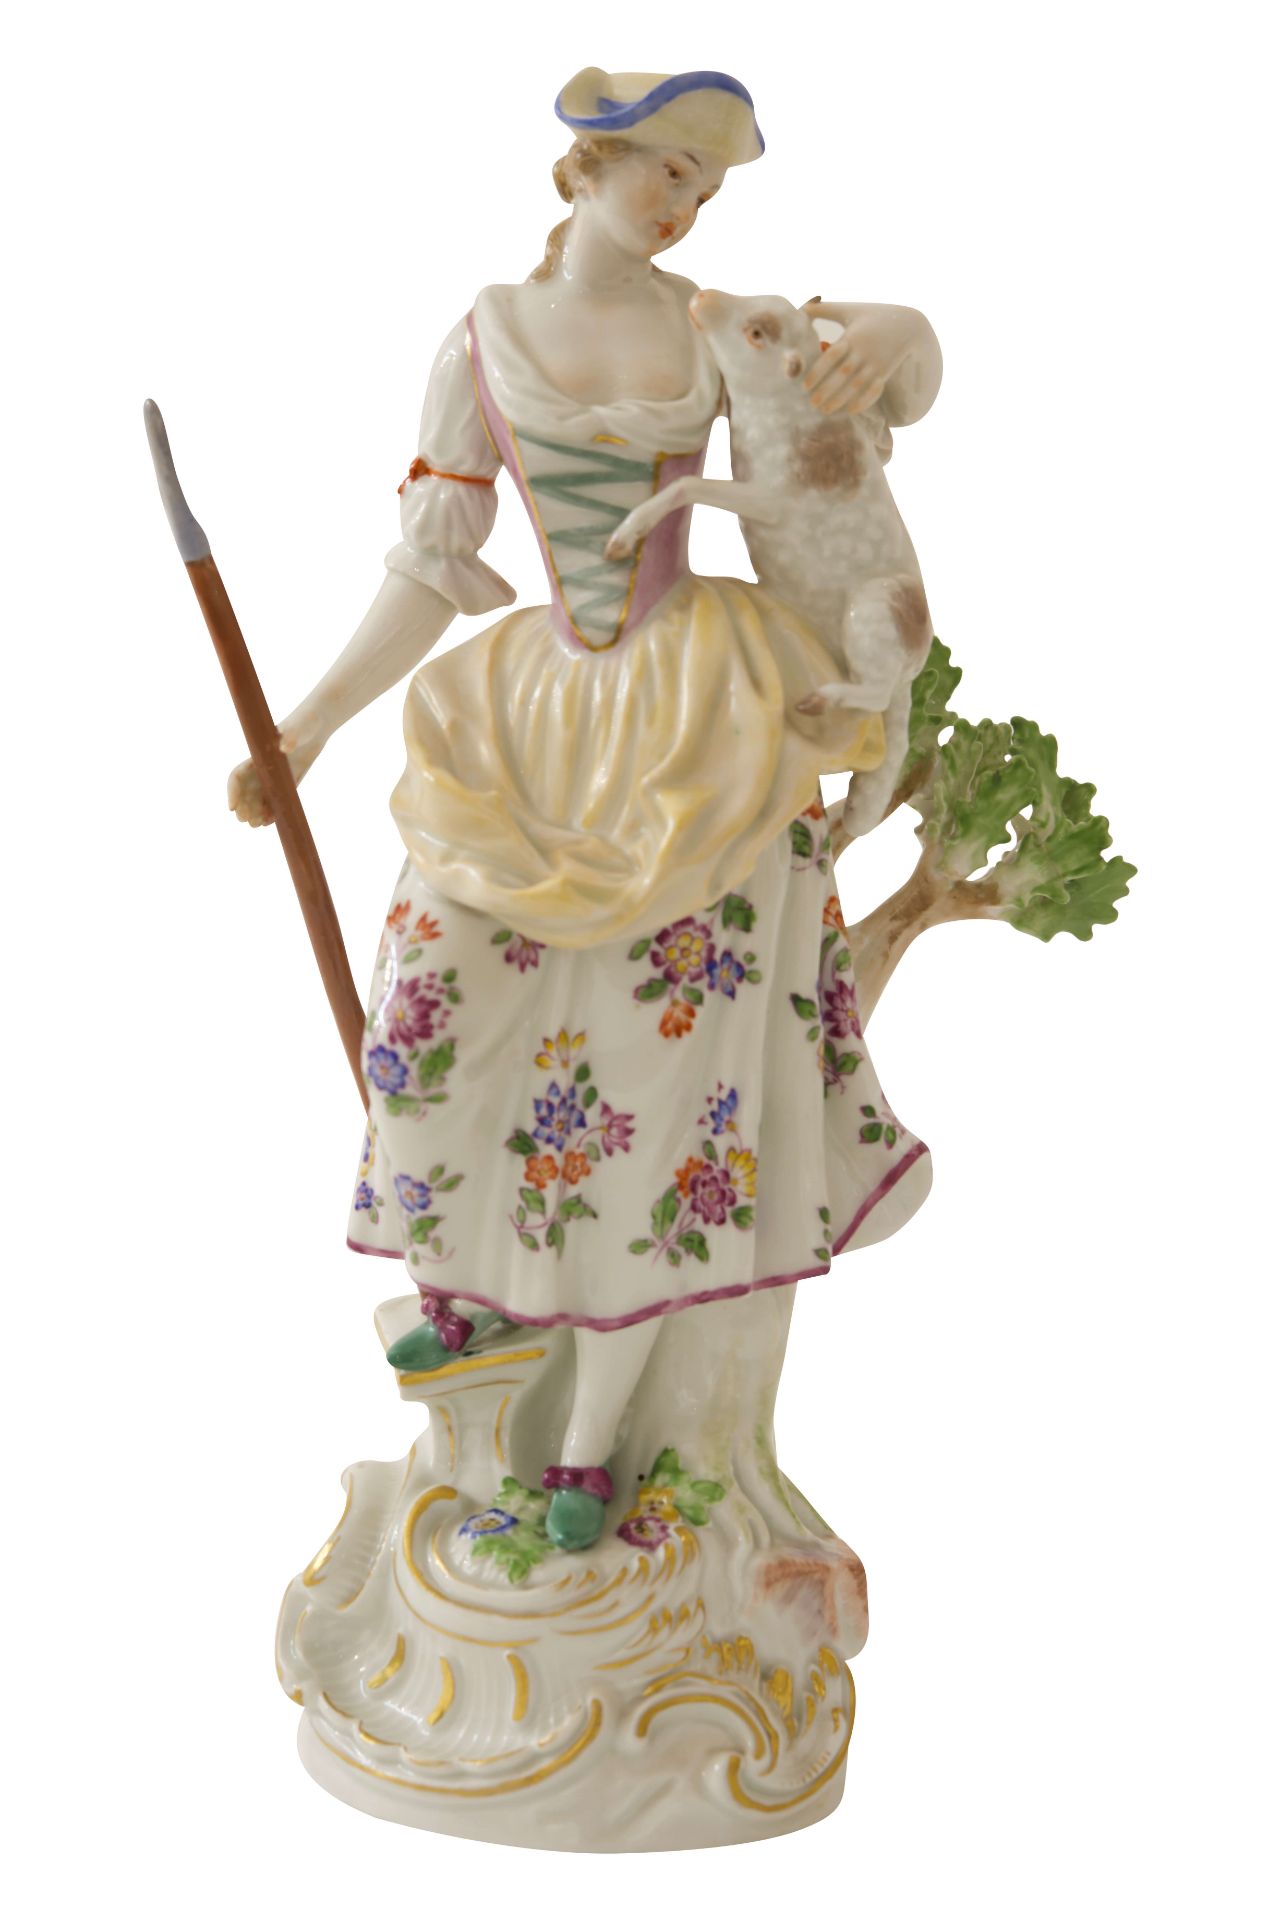 Große Figur "Schäferin" Meisen|Large Figurine "Shepherdess" Meissen